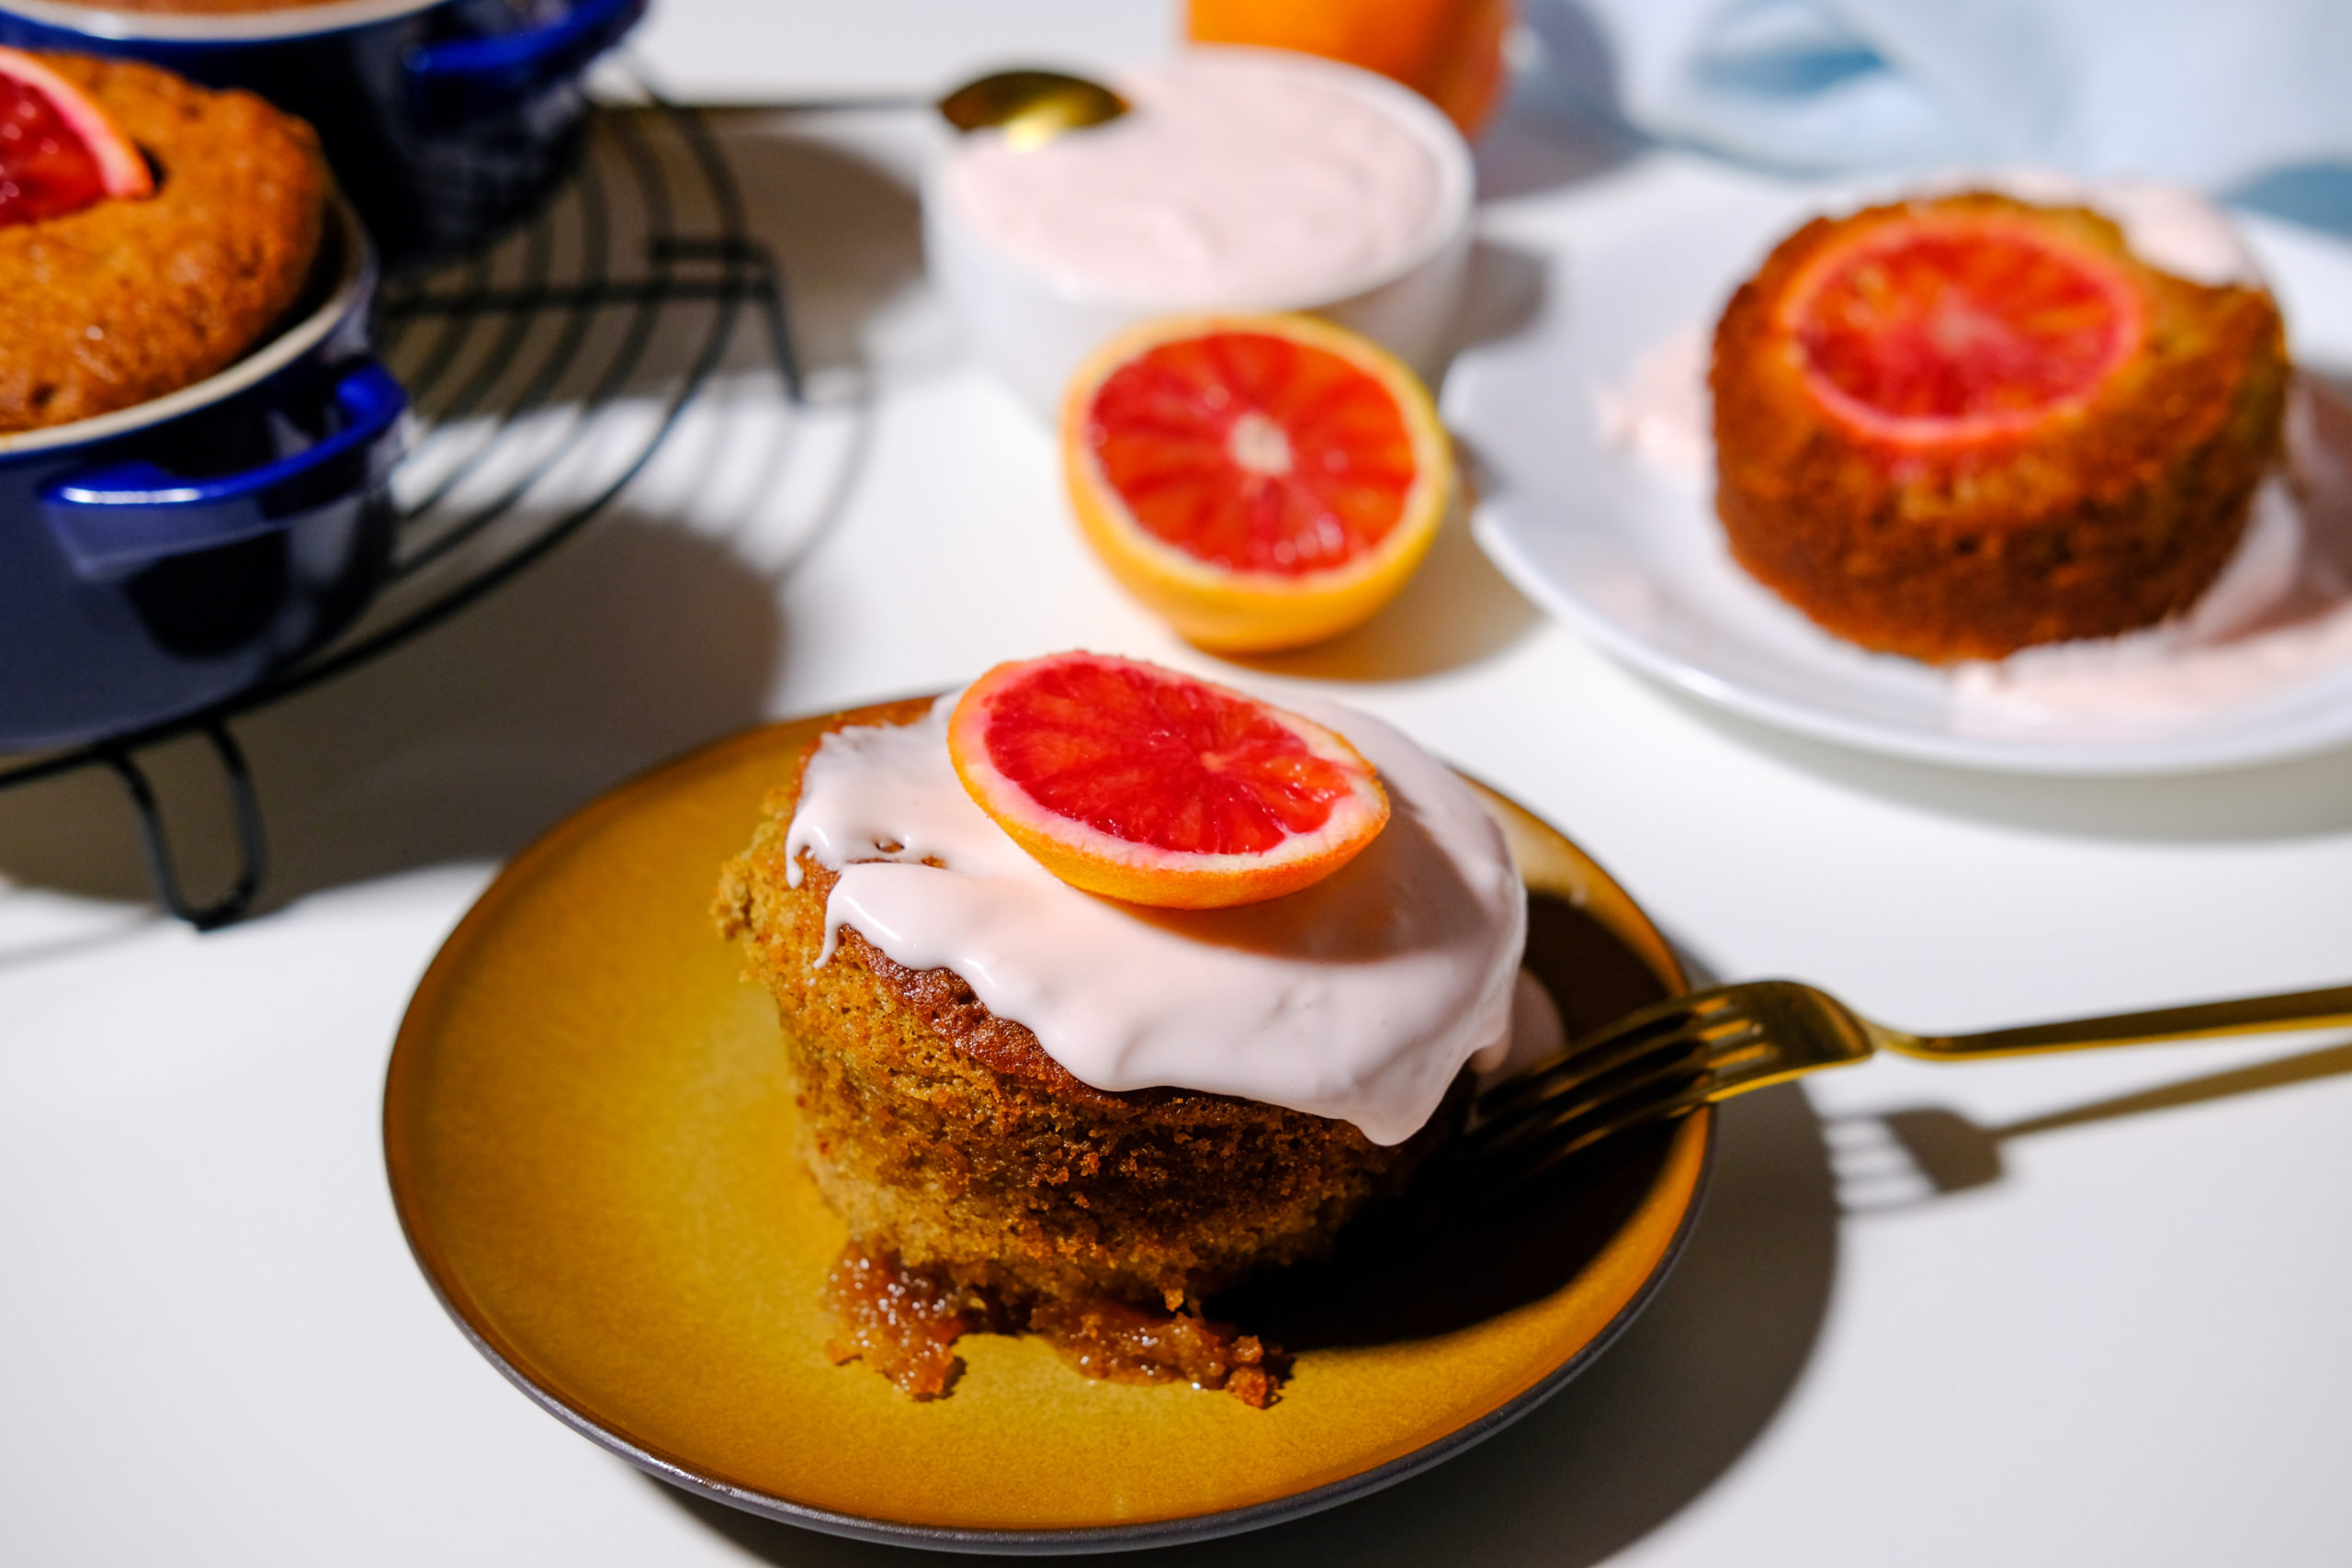 blood orange tea cake